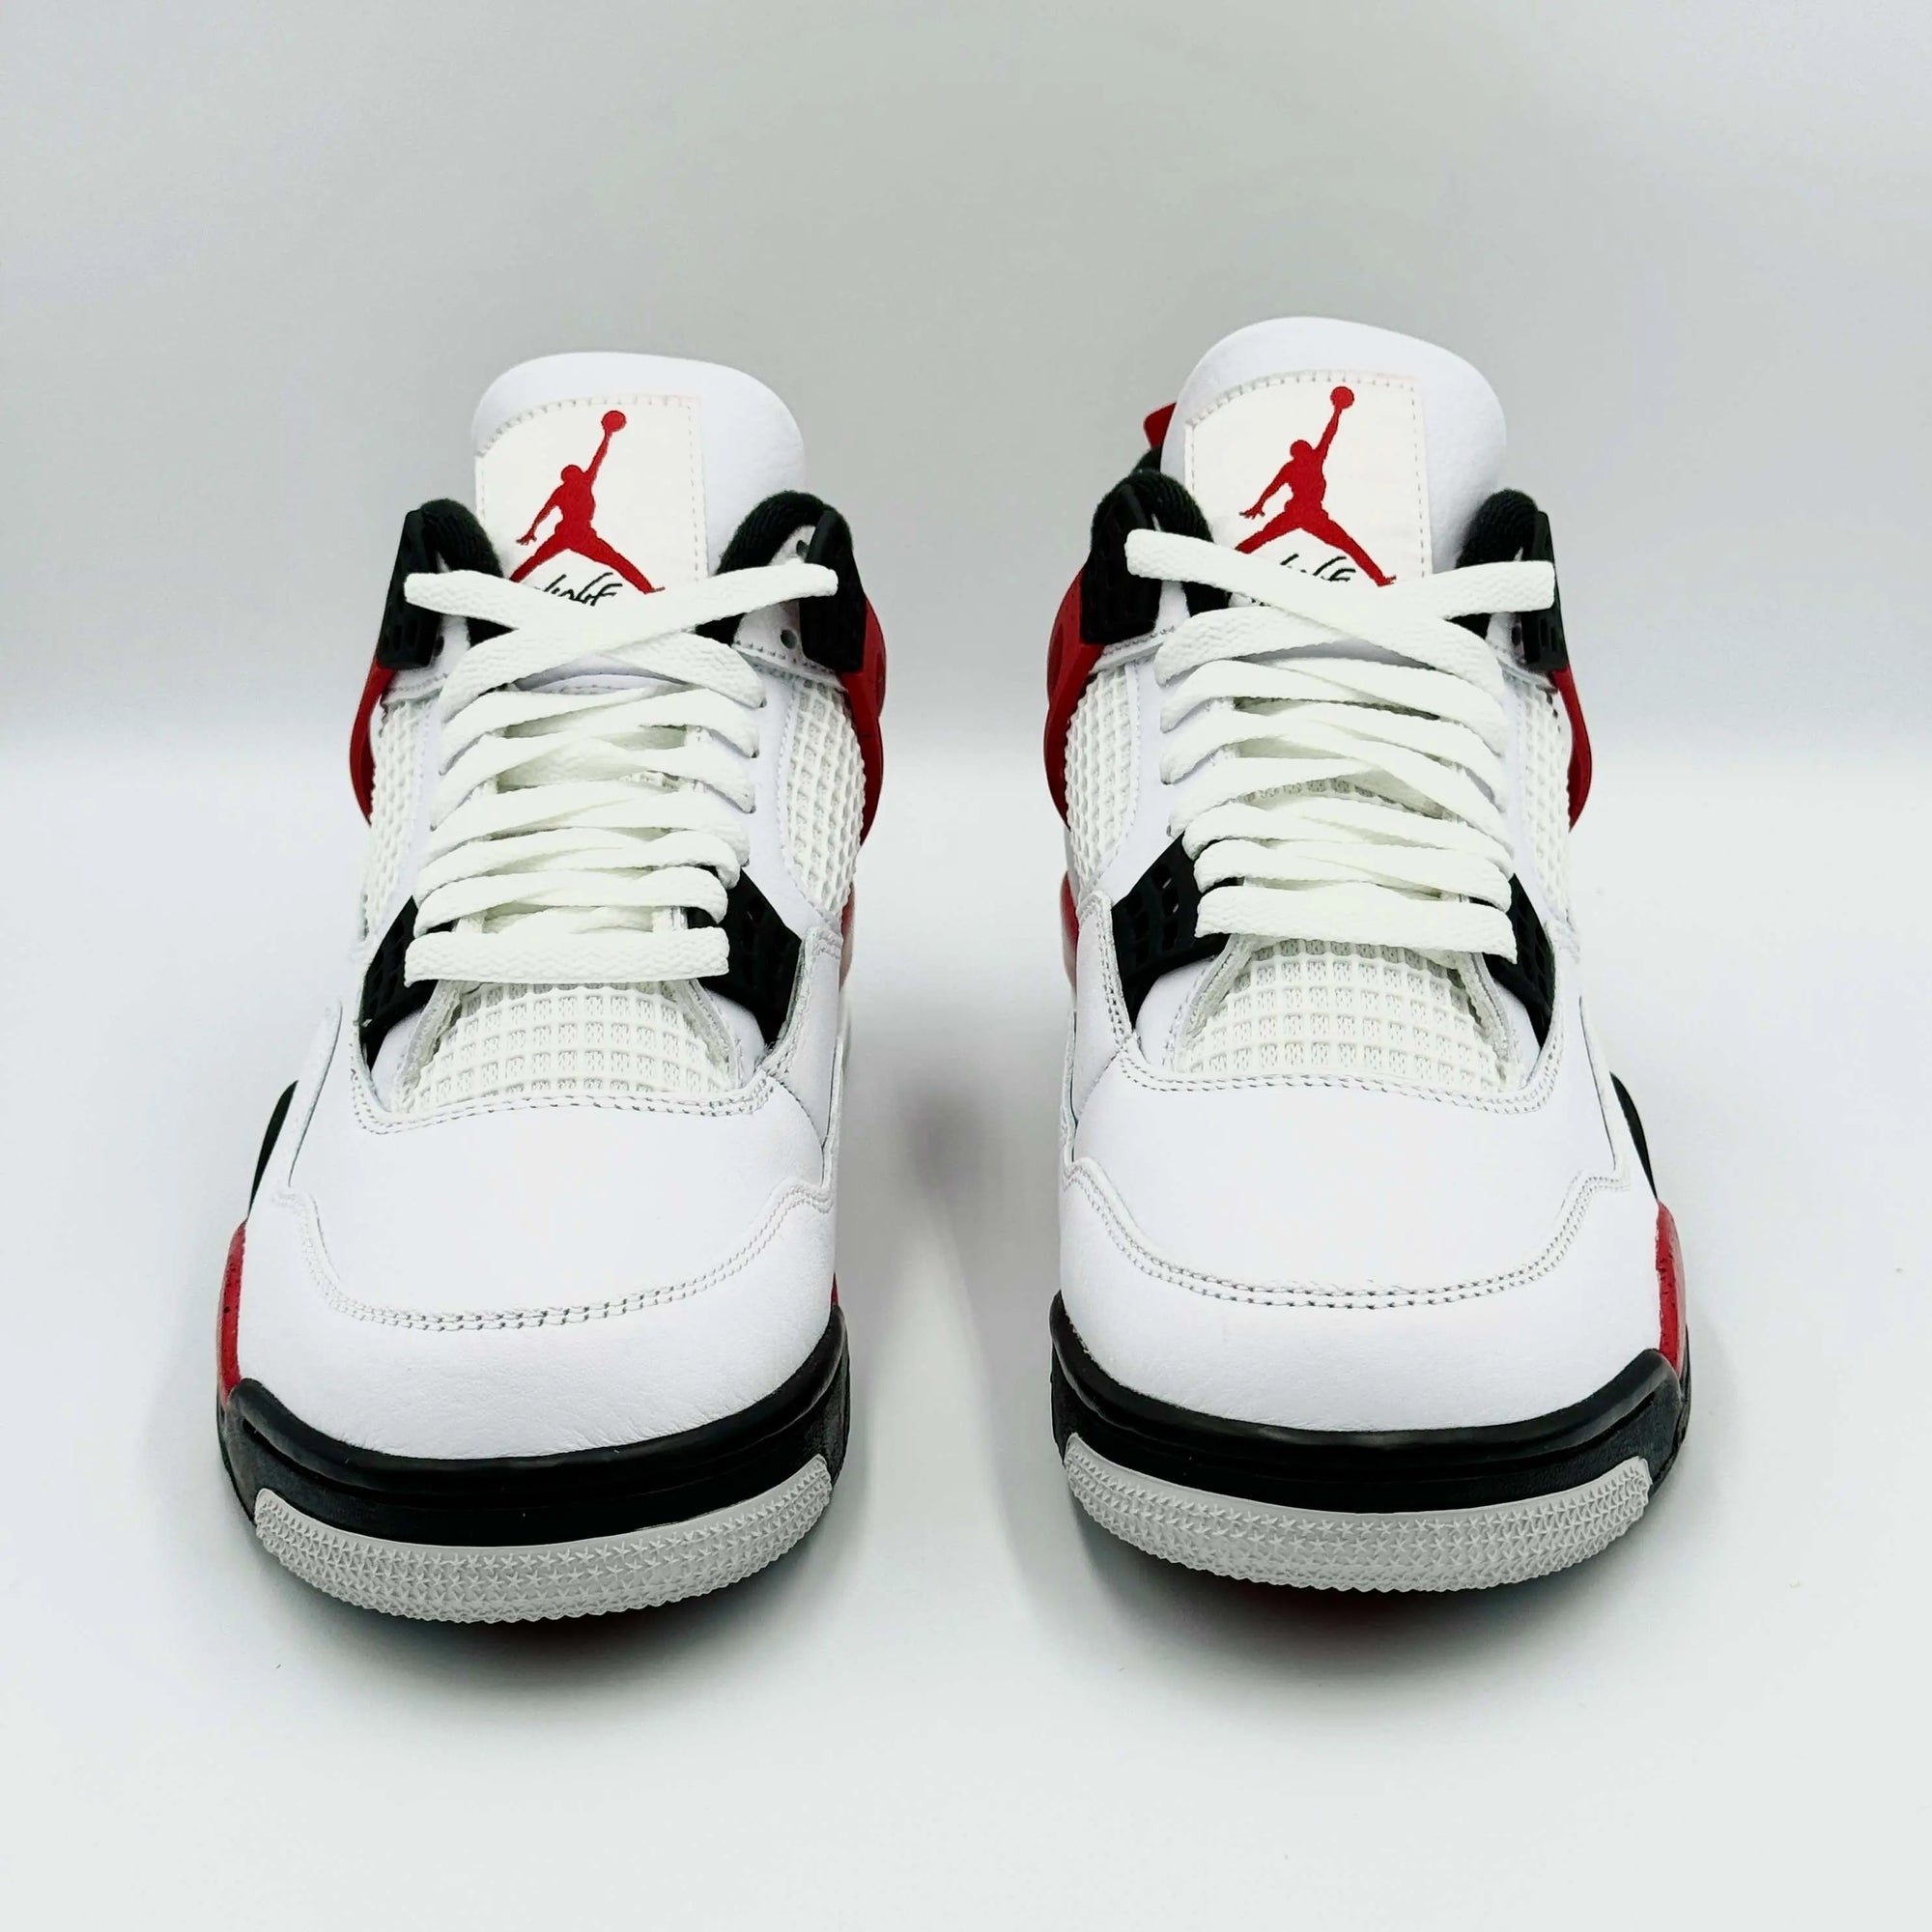 Jordan 4 Retro Red Cement  SA Sneakers